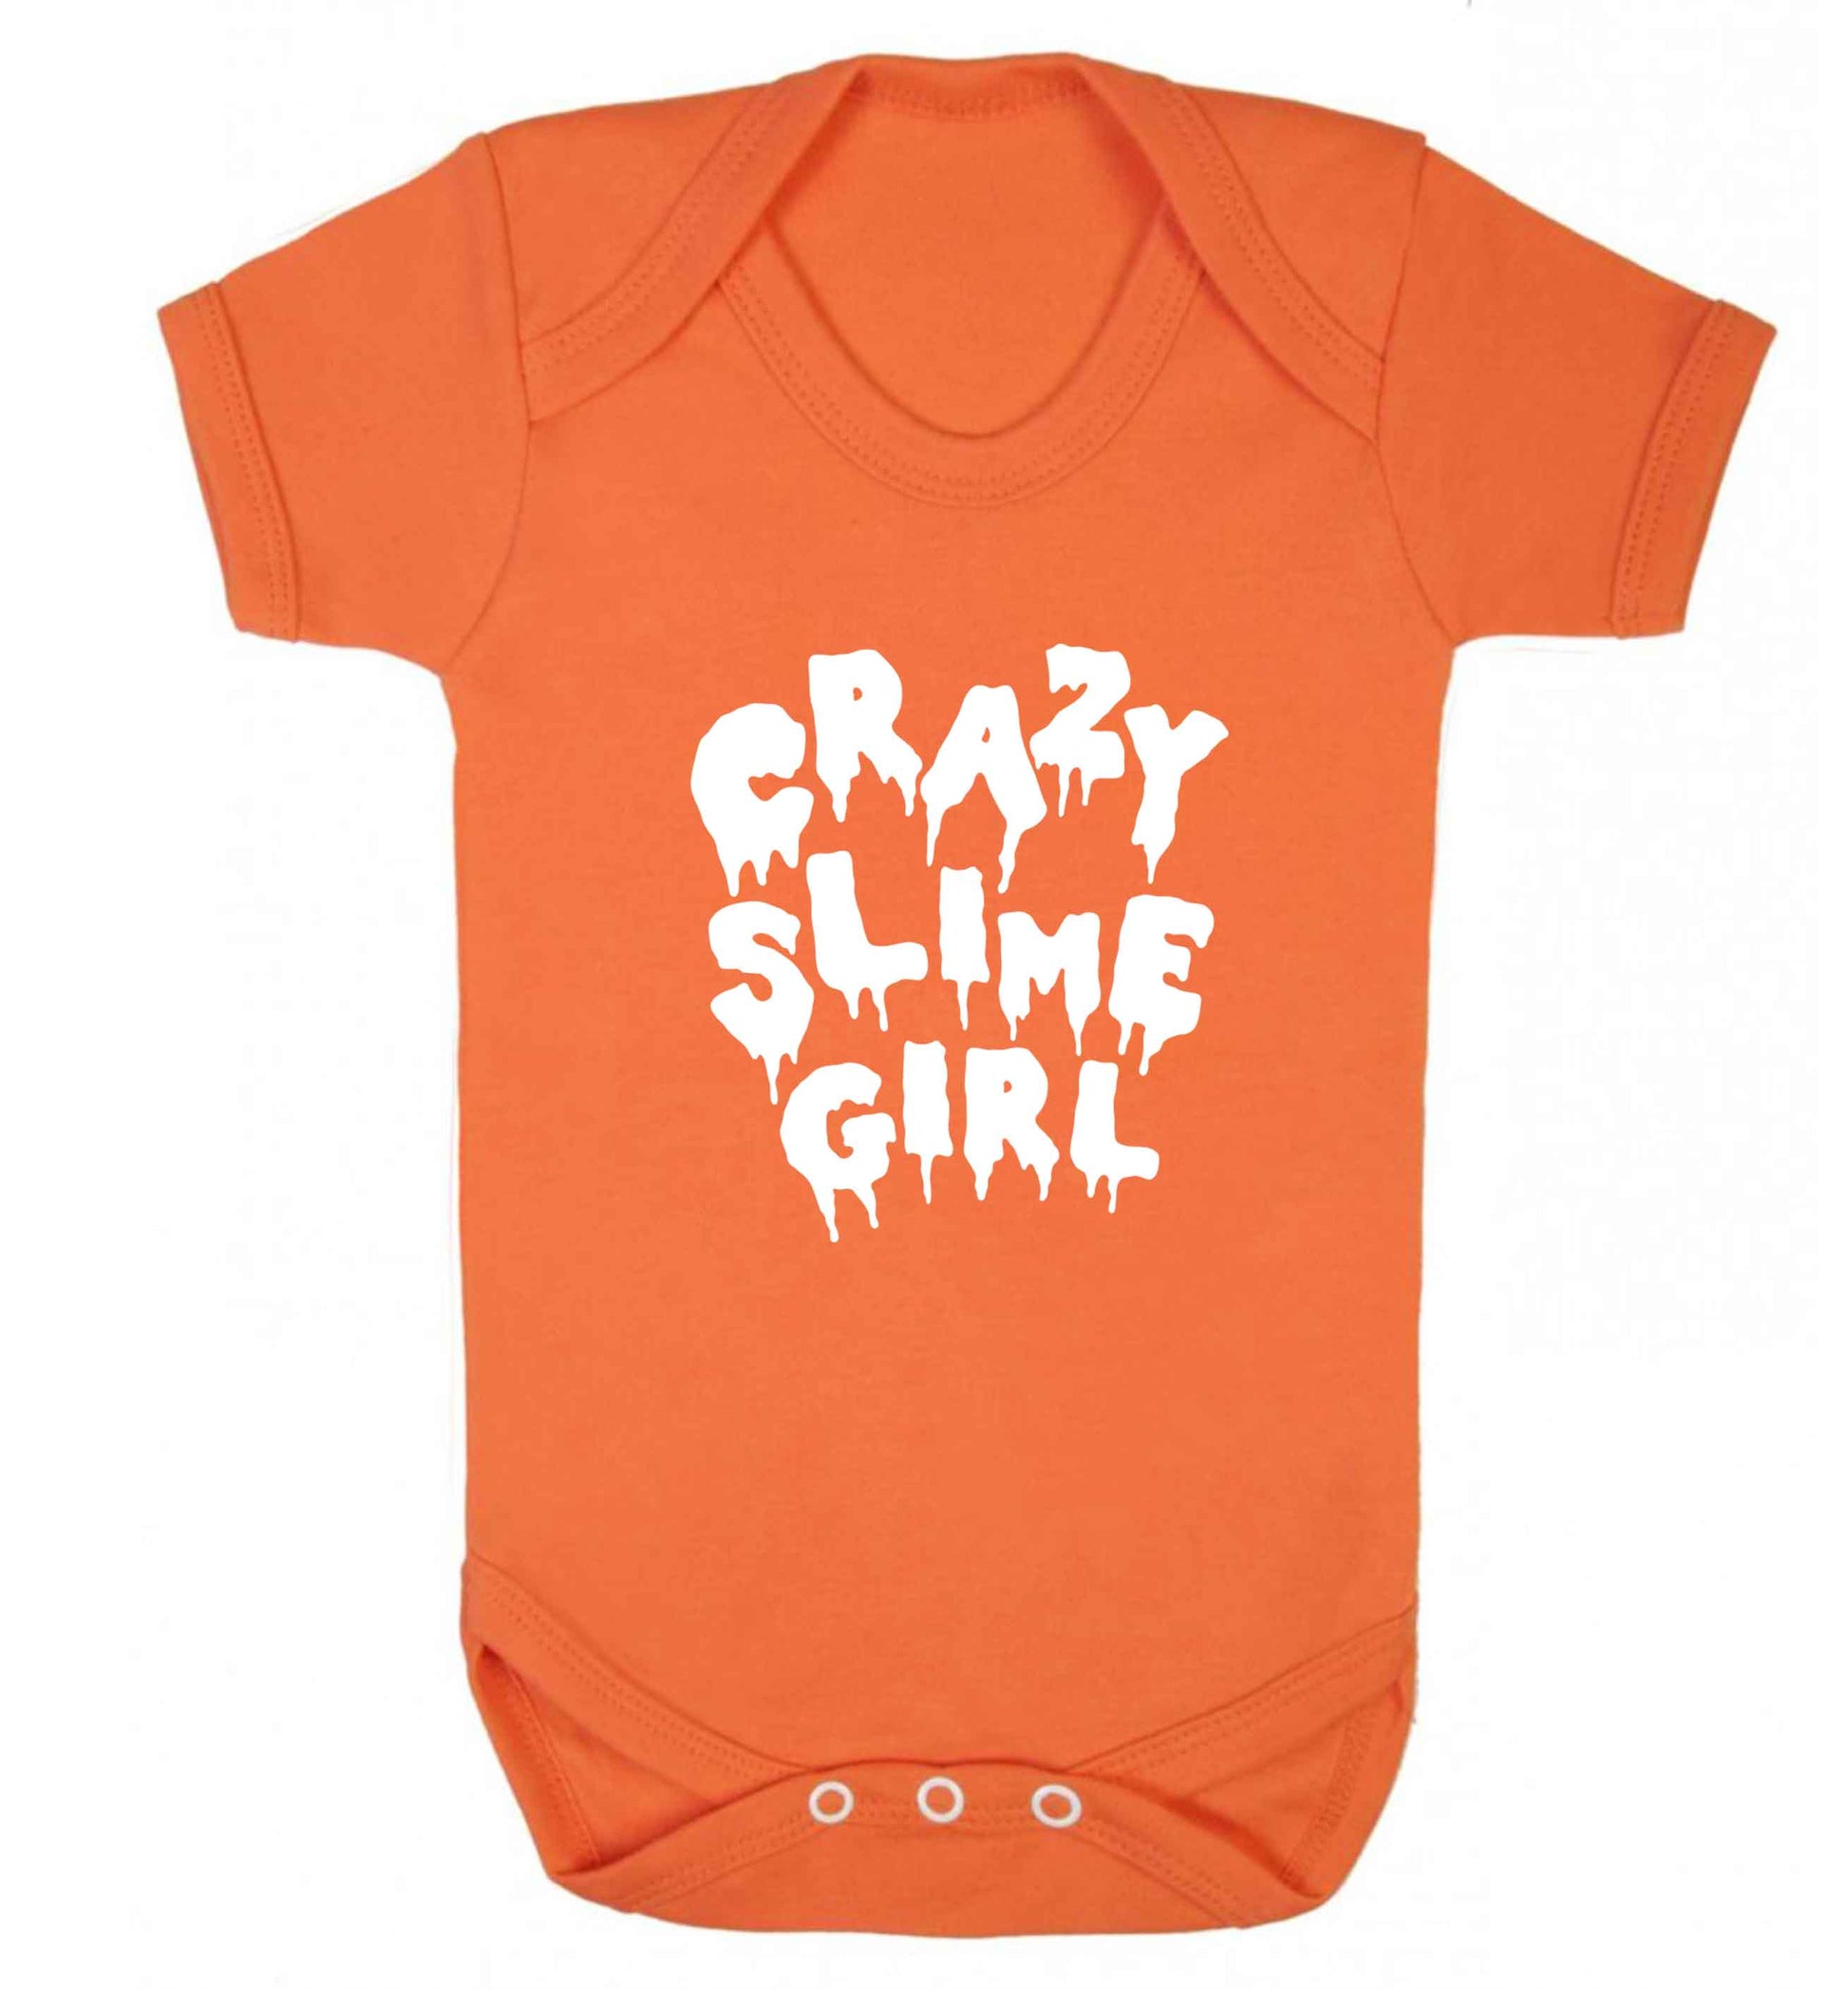 Crazy slime girl baby vest orange 18-24 months